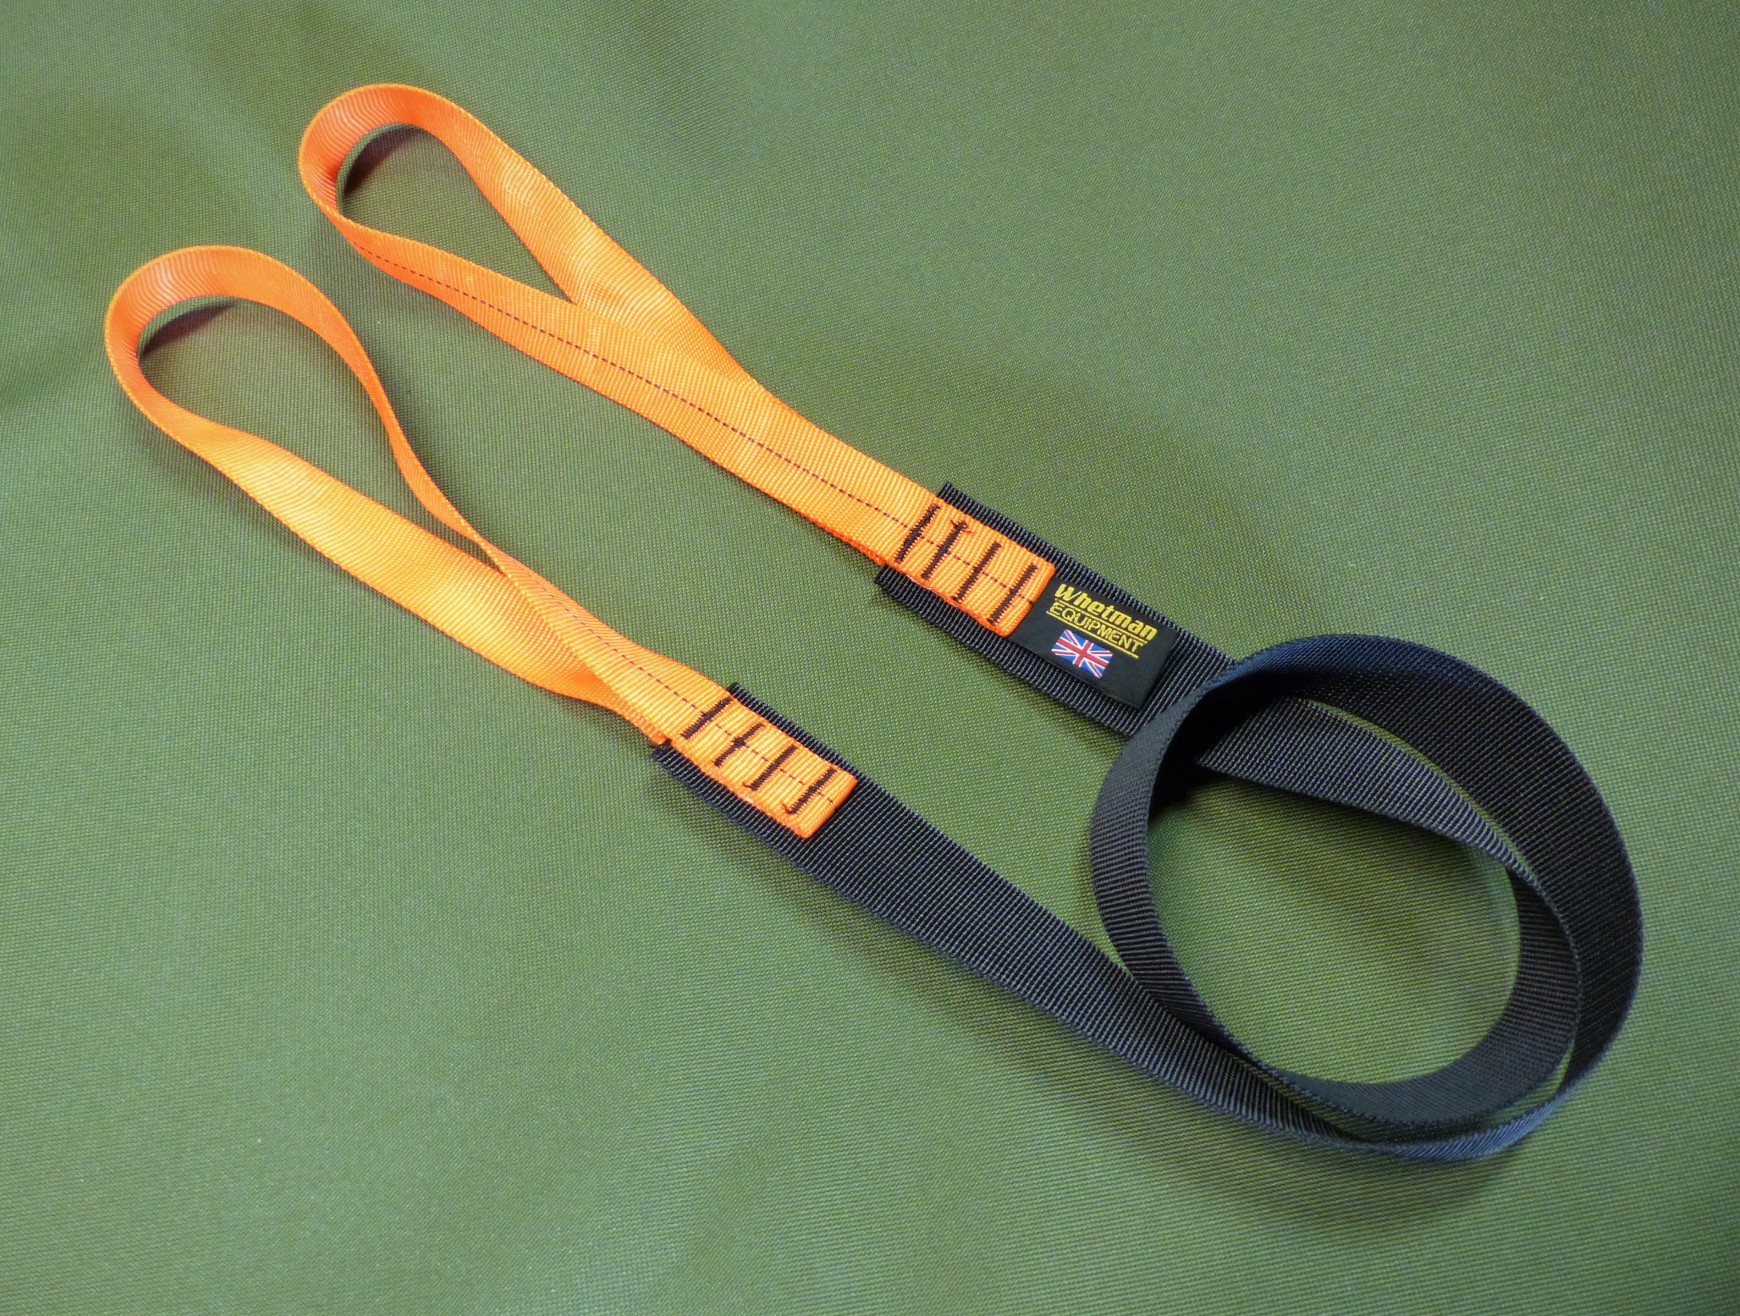 Black & Orange webbing straps for carrying kayaks with NOMAD Sea Kayaking.